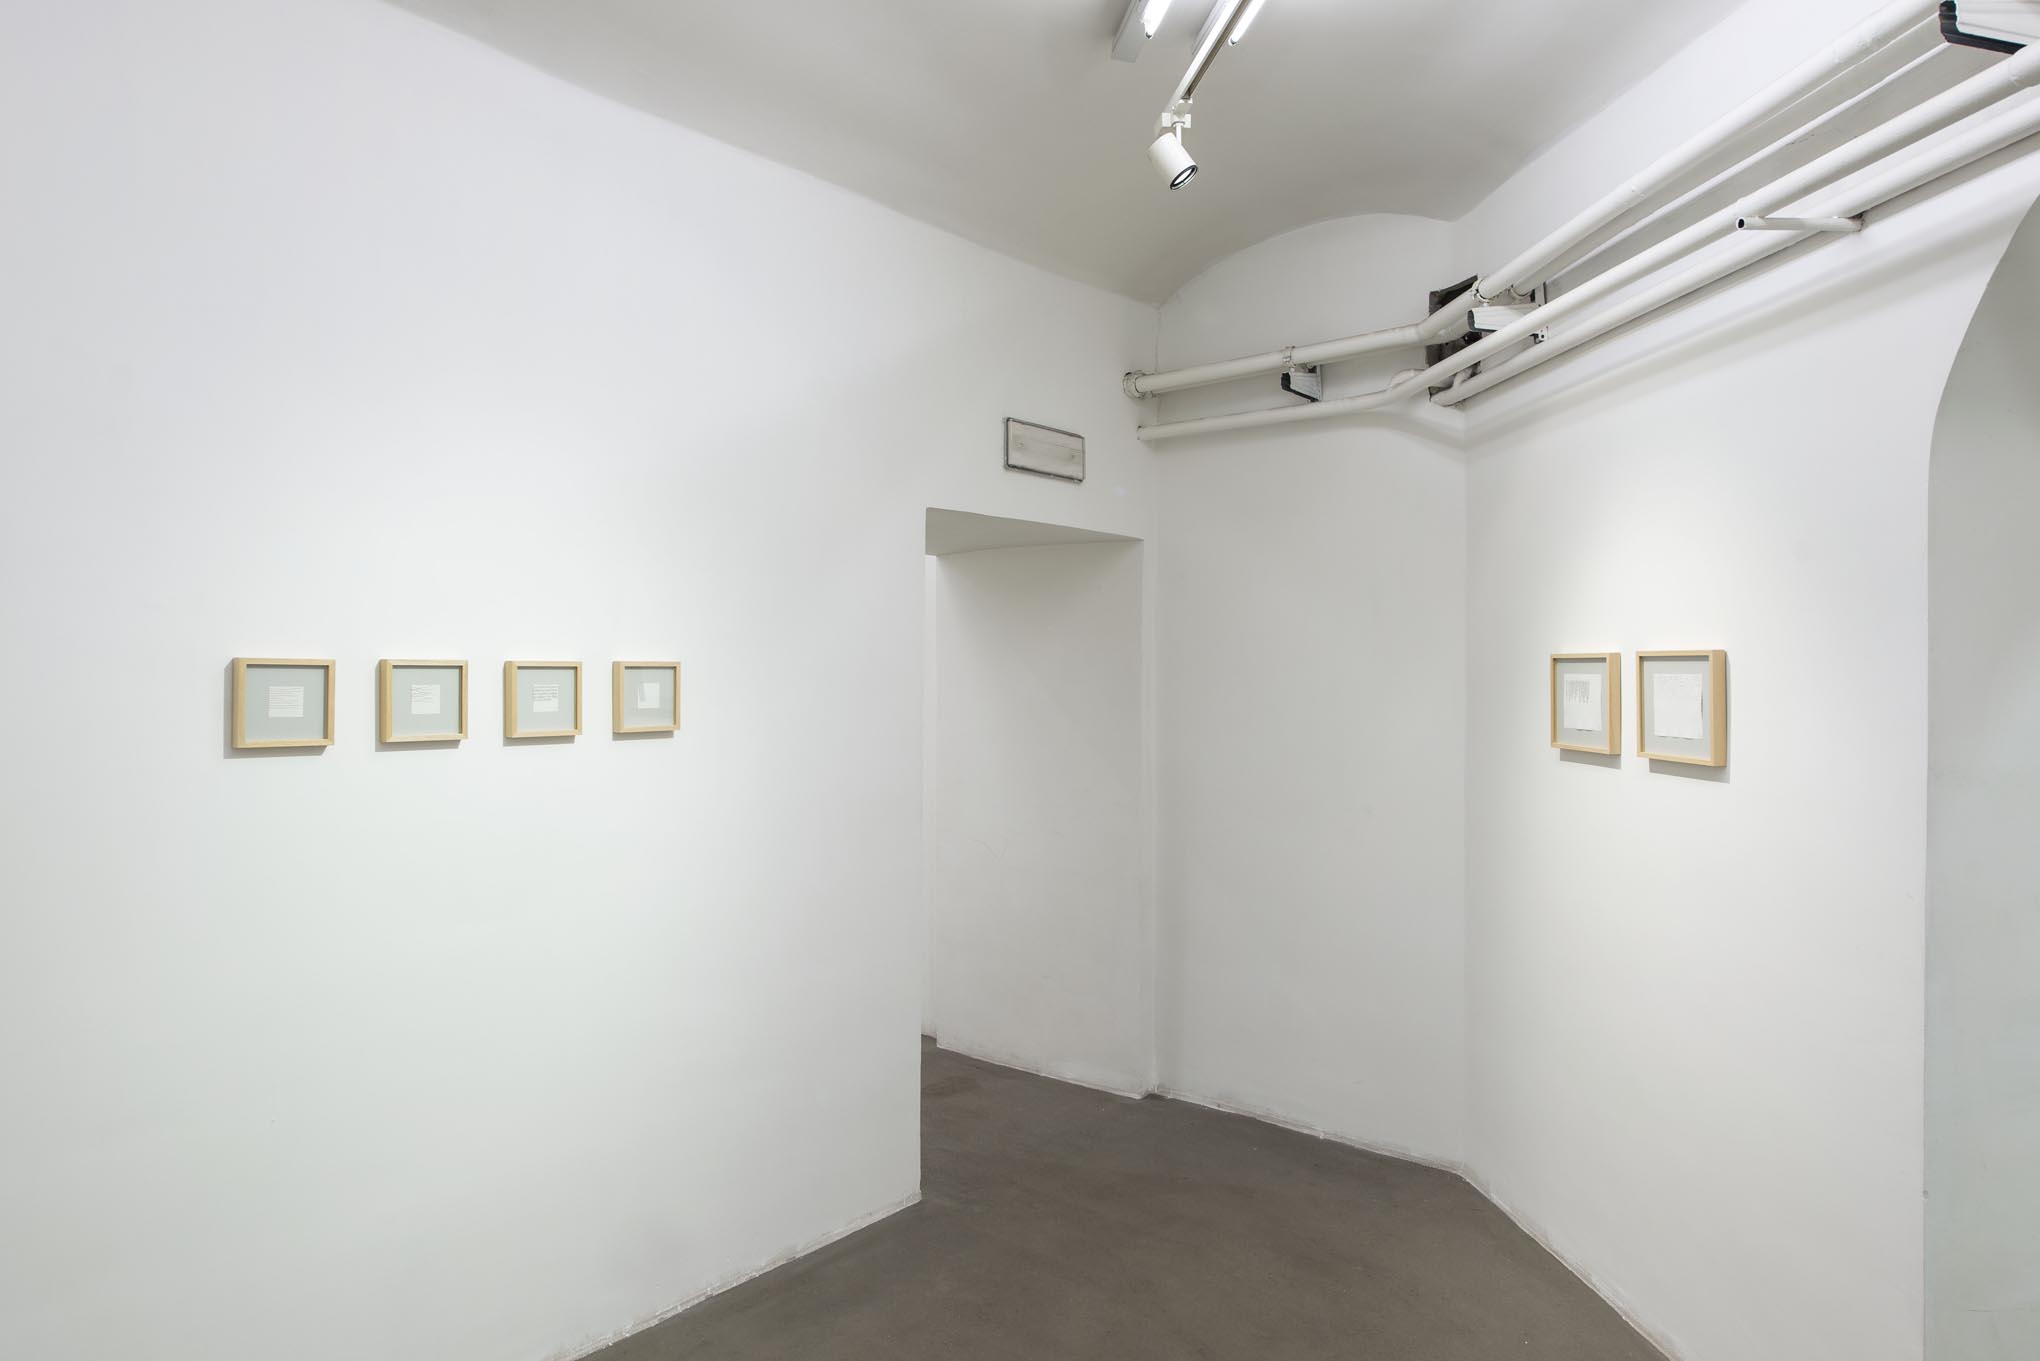 5. Giorgio Griffa: Works on Paper
Installation view, Roma, 2014, foto Giorgio Benni